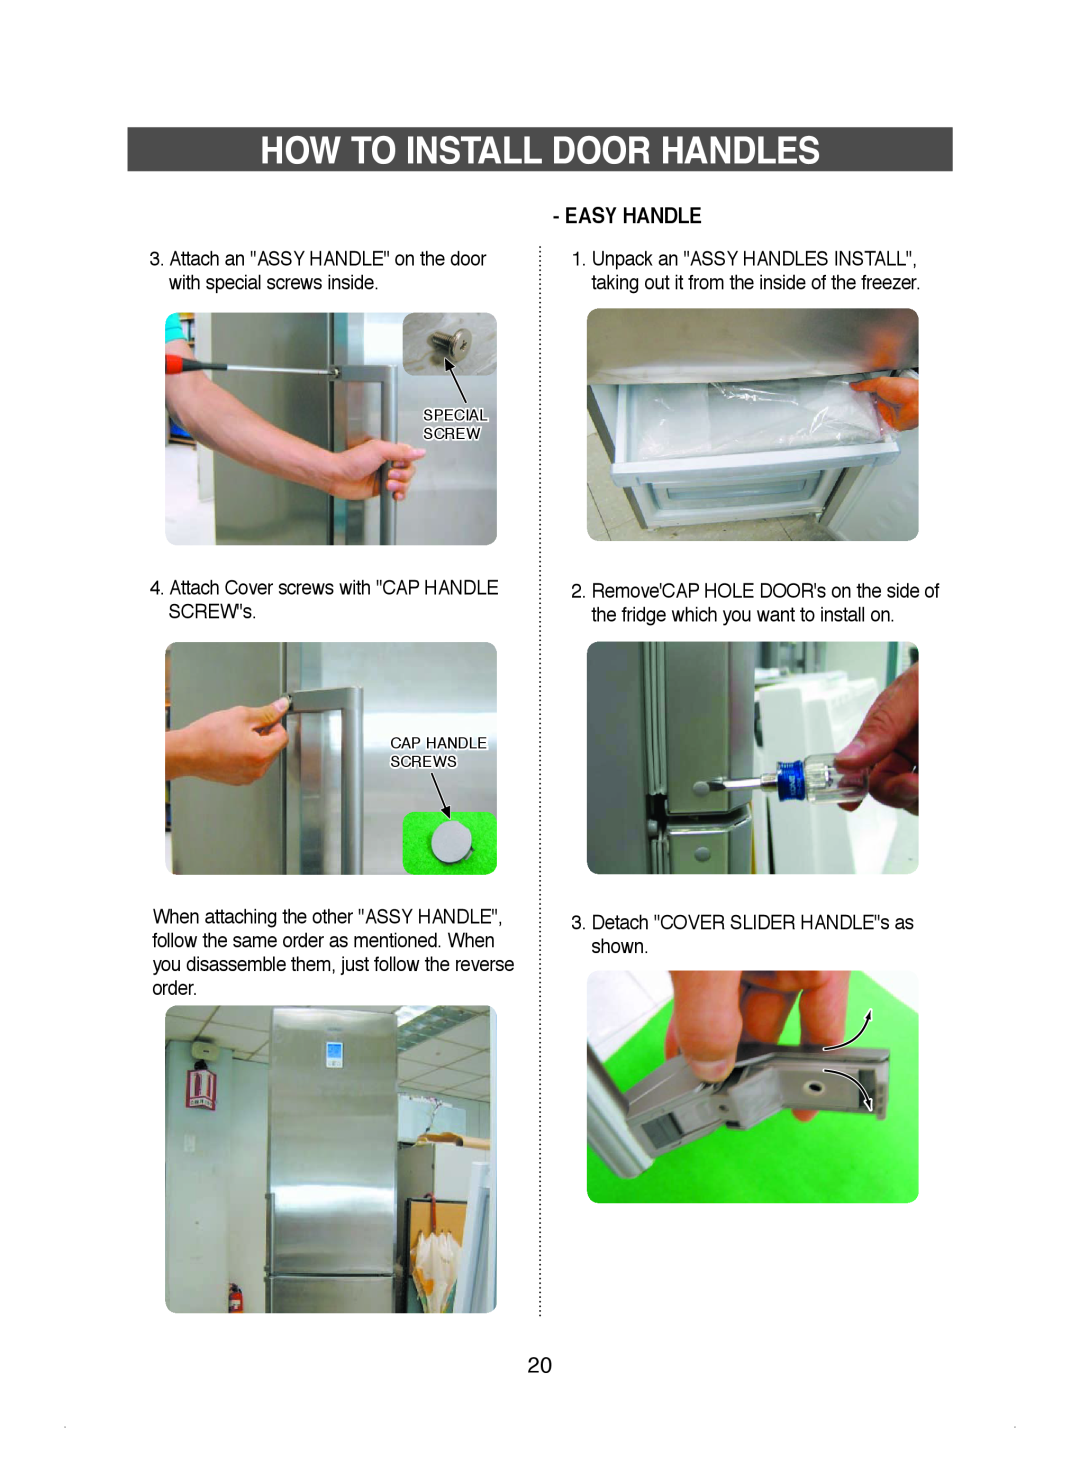 Samsung DA99-01220J manual Easy Handle, How To Install Door Handles 